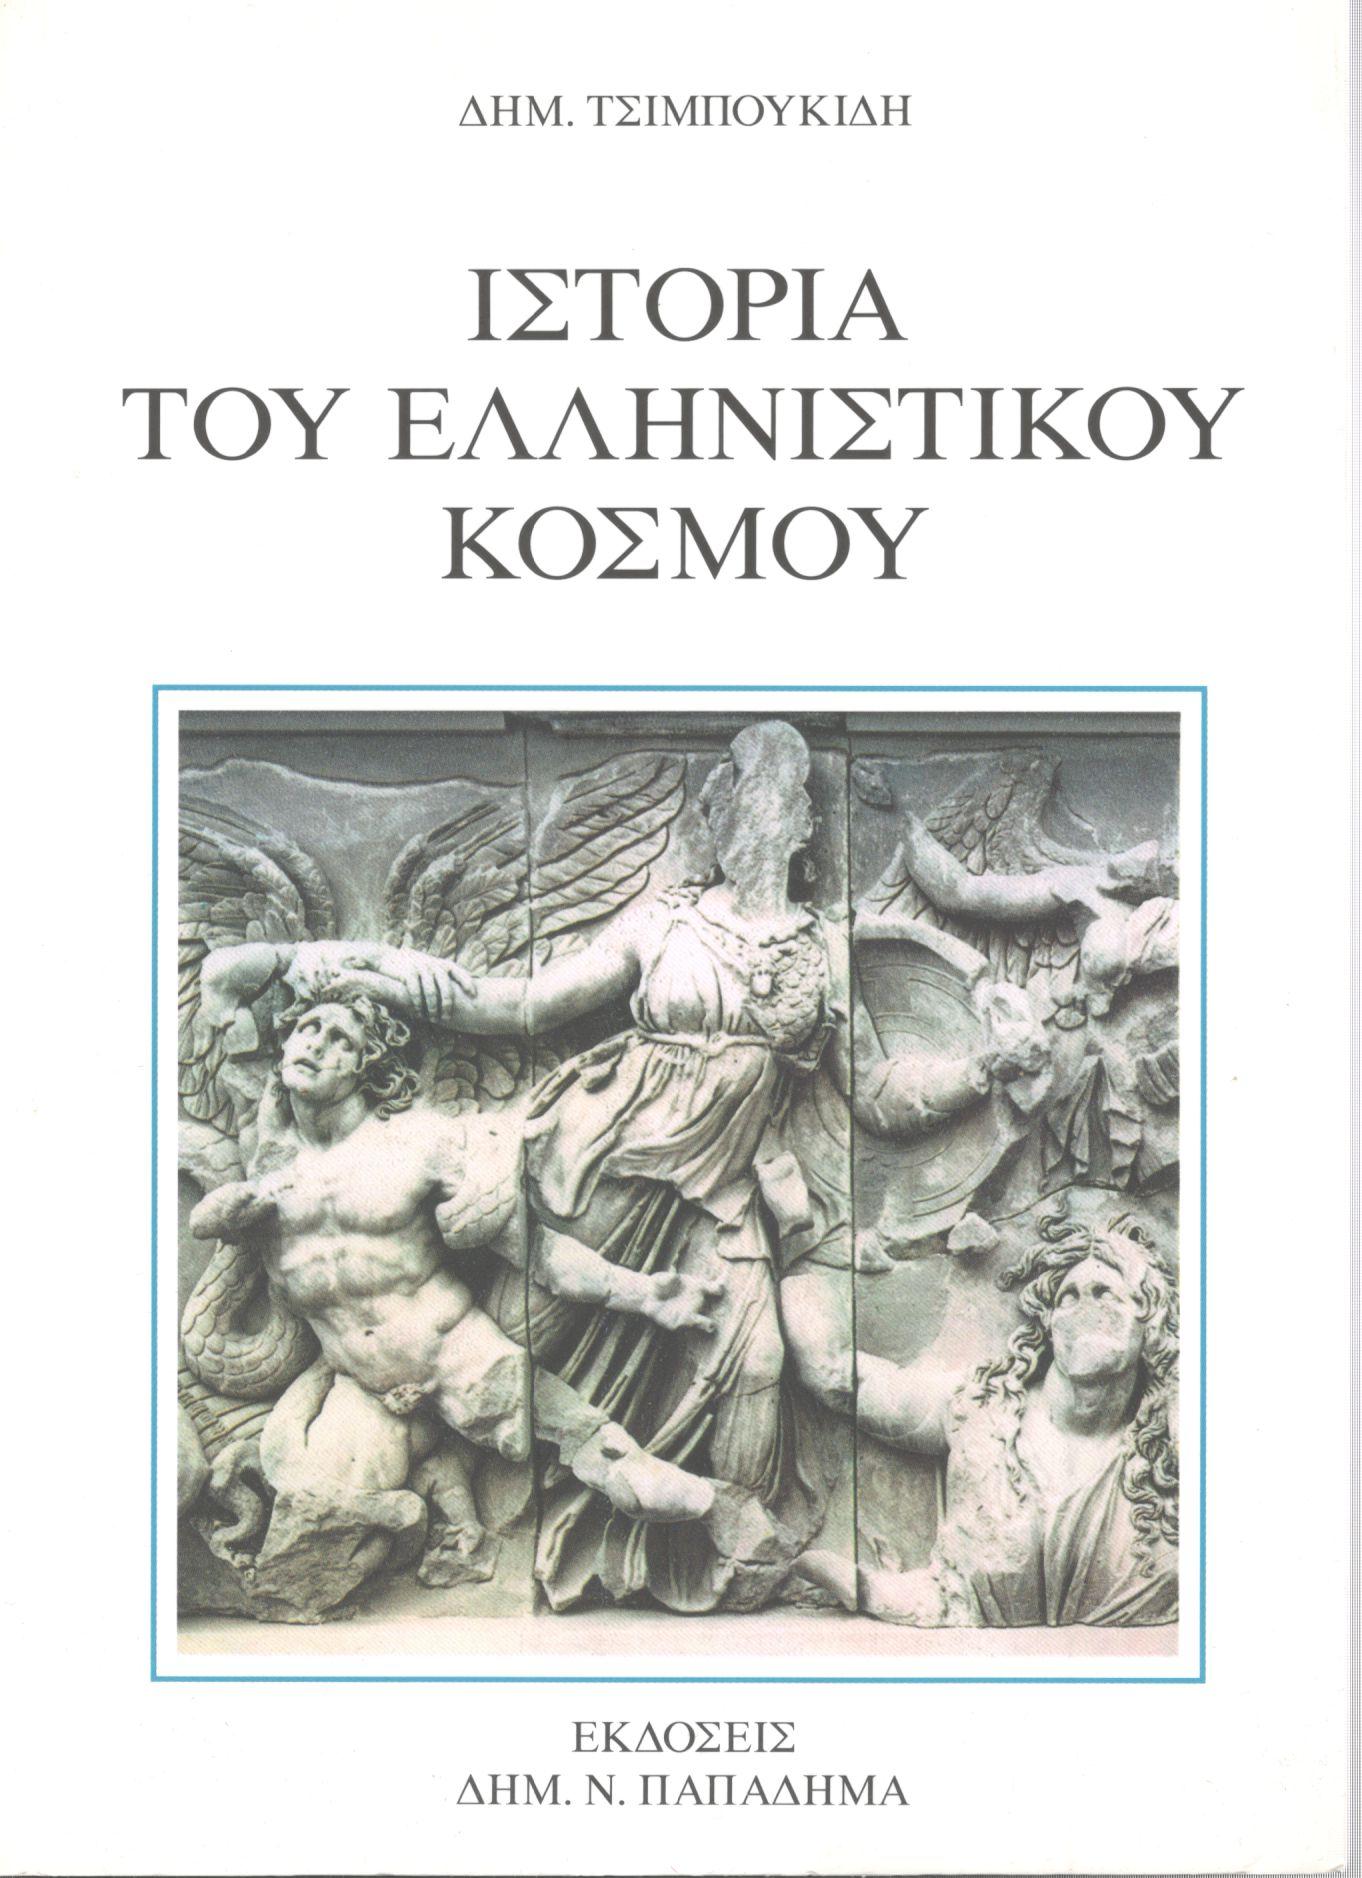 Ιστορία του ελληνιστικού κόσμου